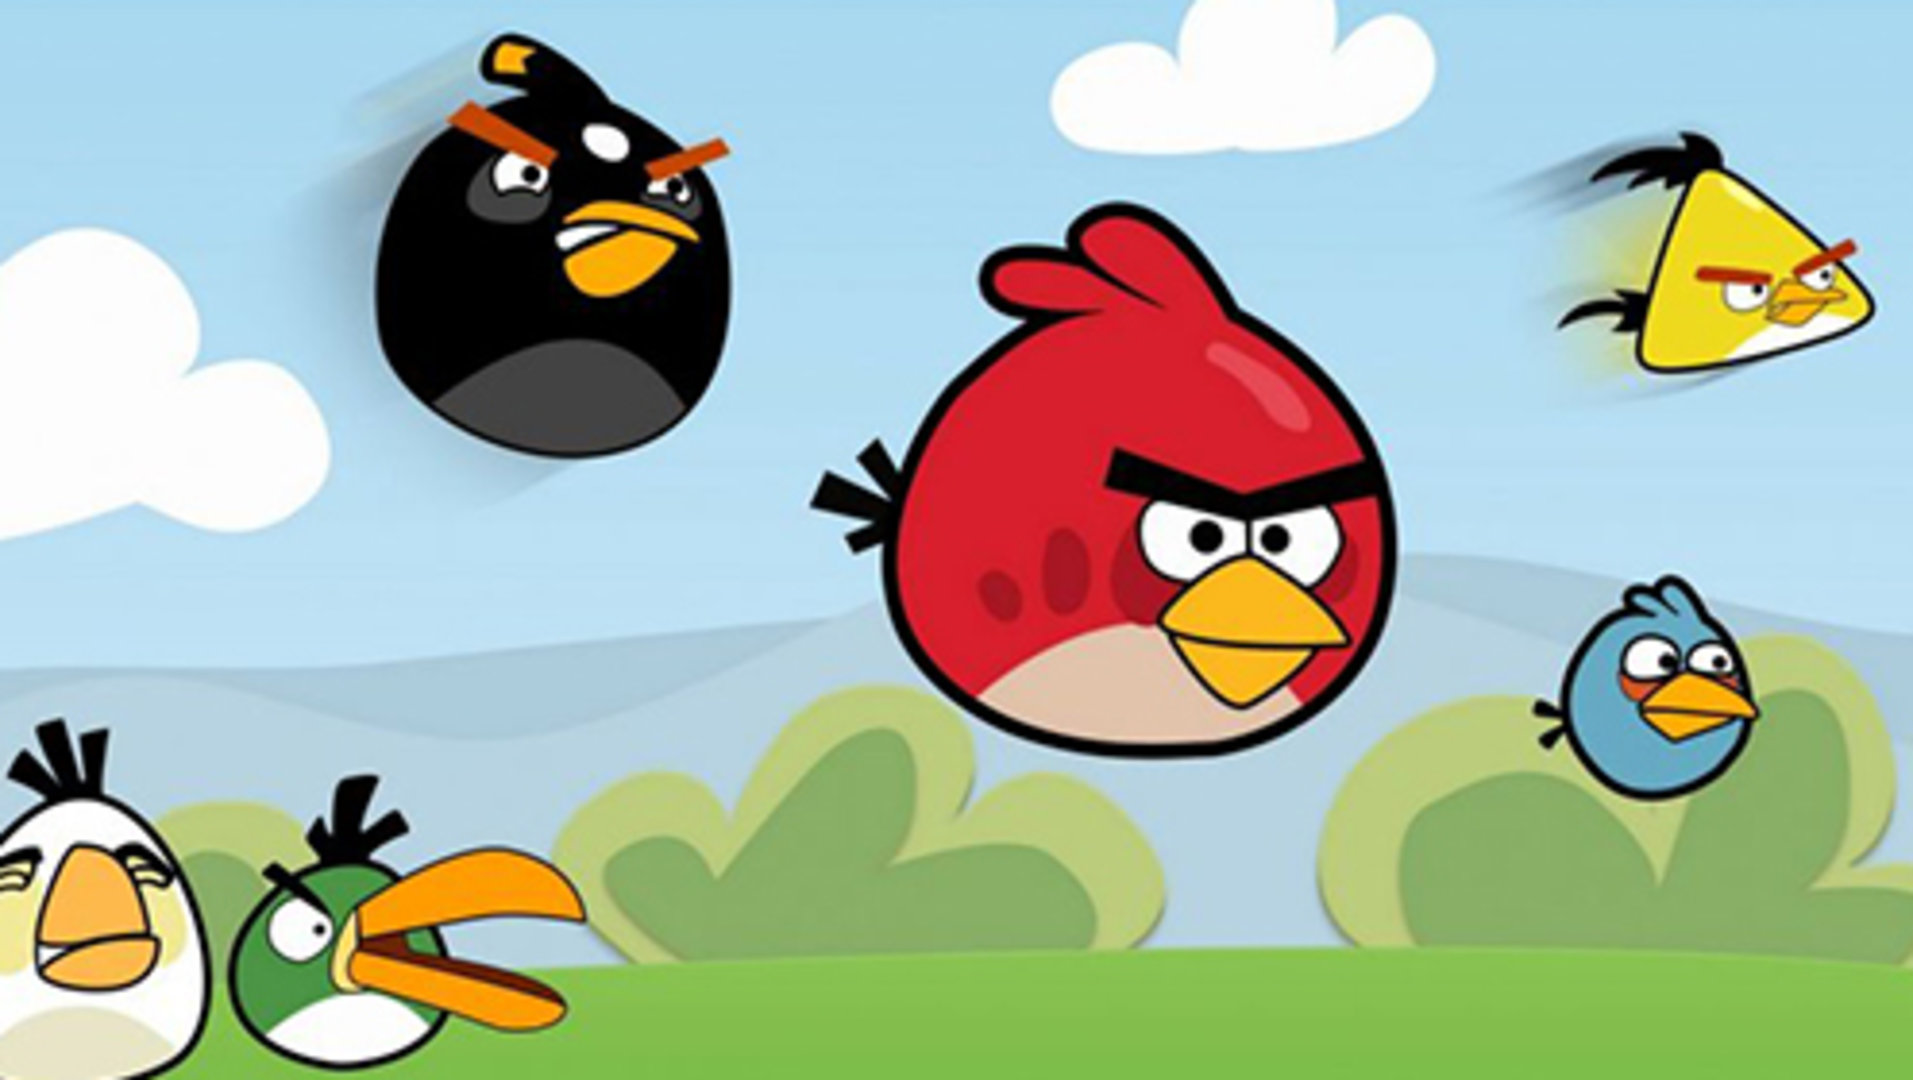 《愤怒的小鸟》将推出全新动画系列 2021年网飞播出|Netflix_新浪科技_新浪网